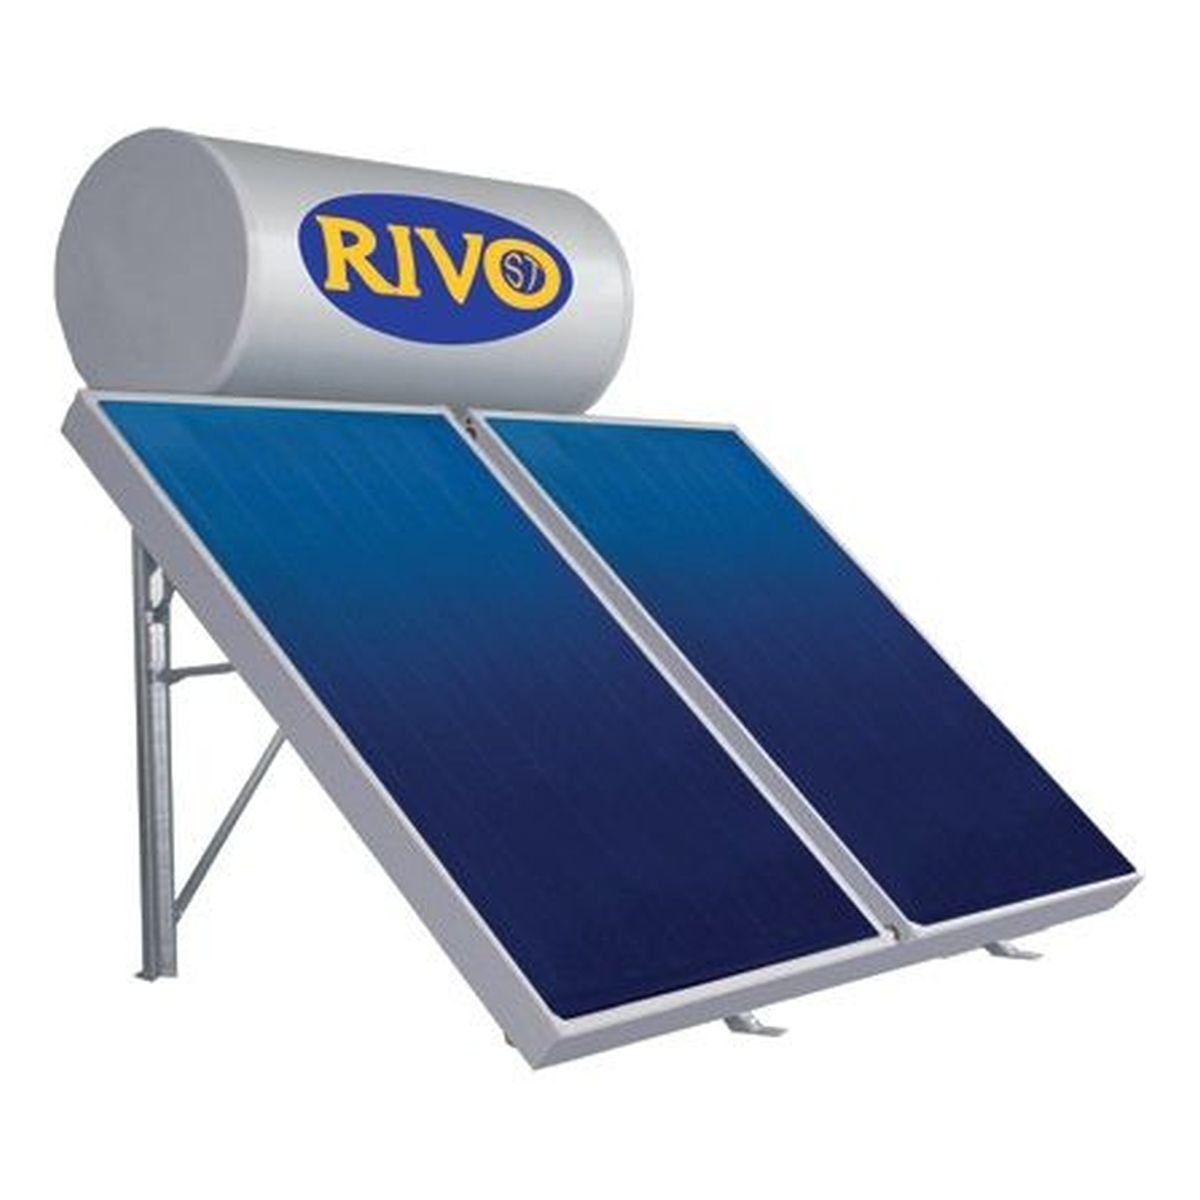 Ηλιακός Glass ΙΙ STK150S 1x2,40m2 Kεραμοσκεπής 44.1.15024Κ RIVO